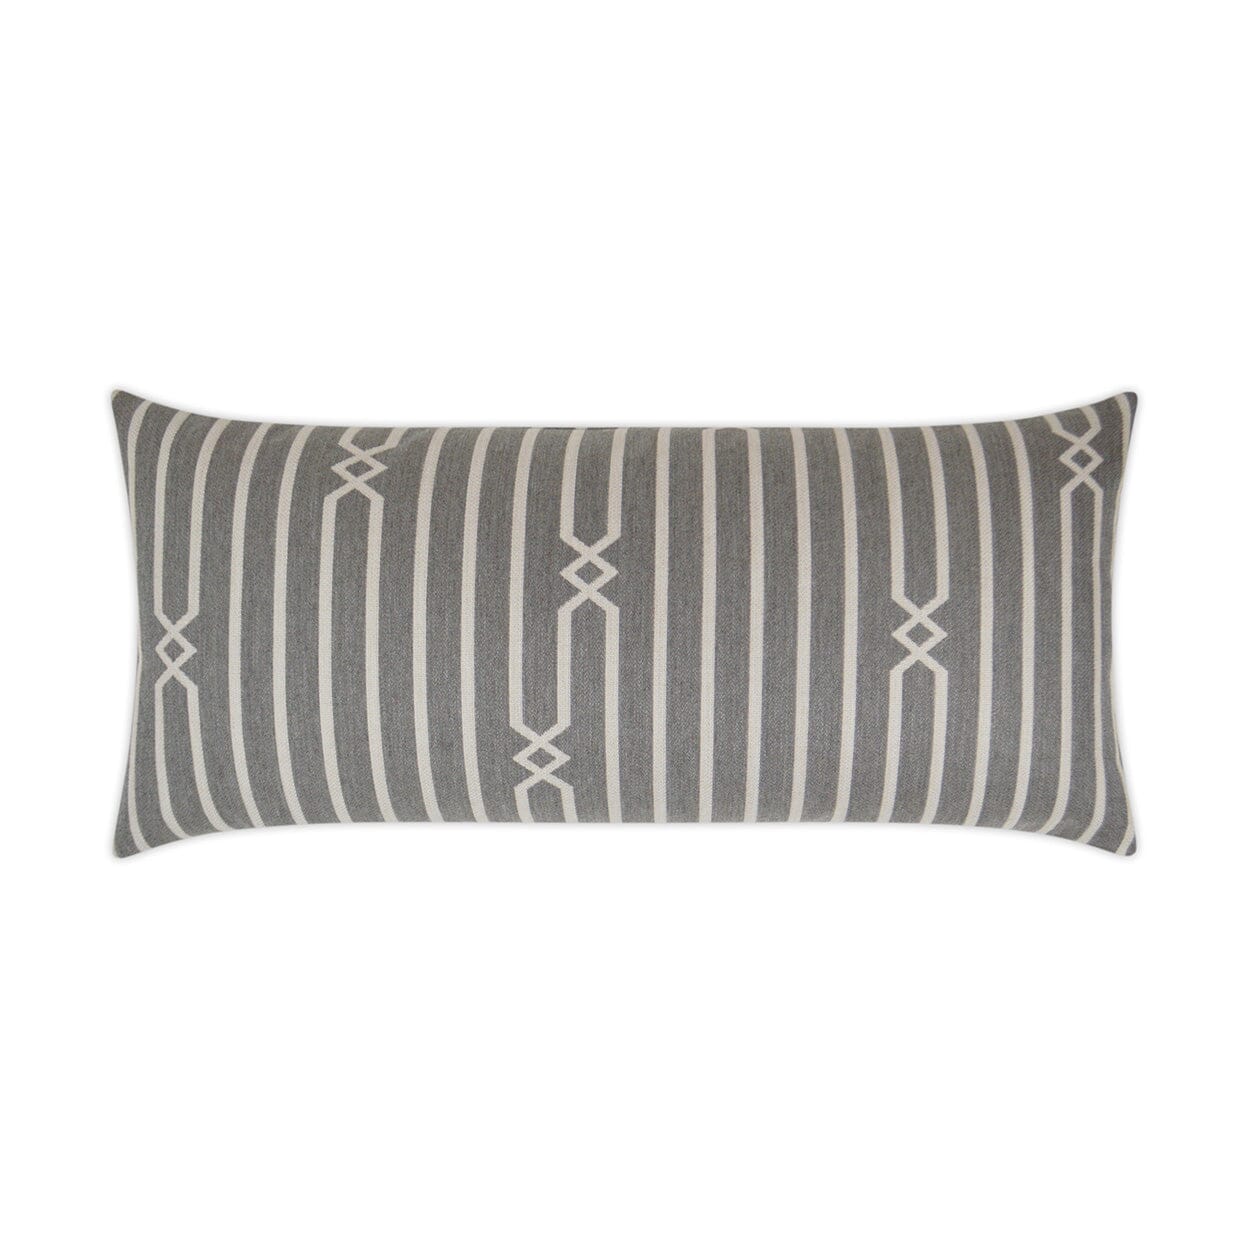 D.V. Kap 12" x 24" Outdoor Lumbar Pillow | Kitri Stone Pillows D.V Kap Outdoor